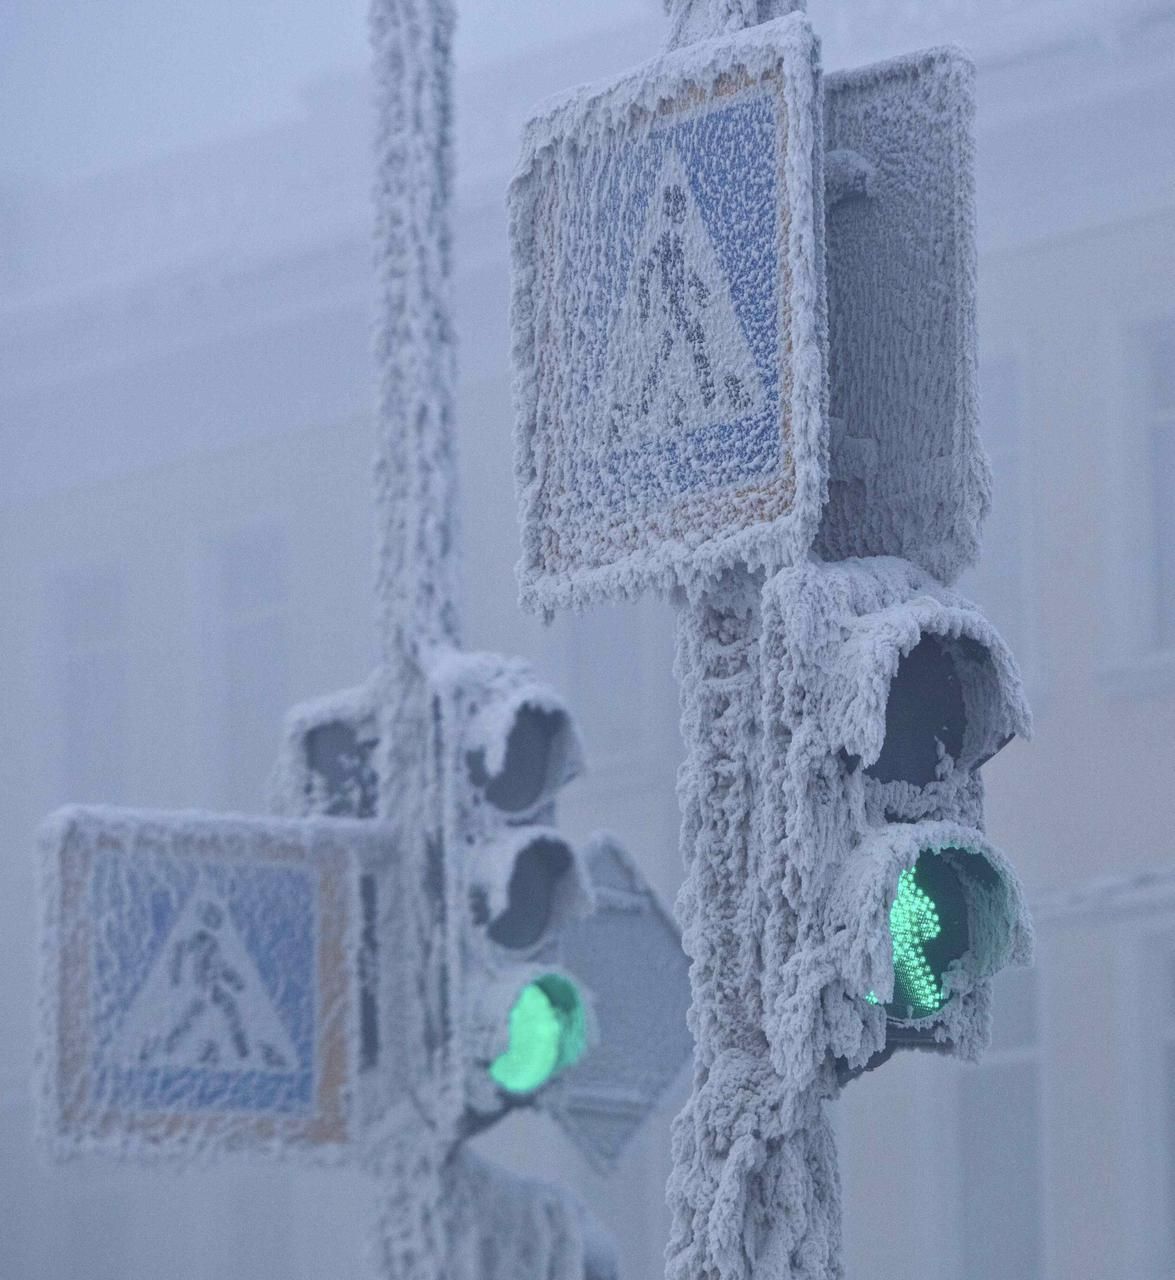 Obrazem: Fotoreportáž z mrazivého Jakutska